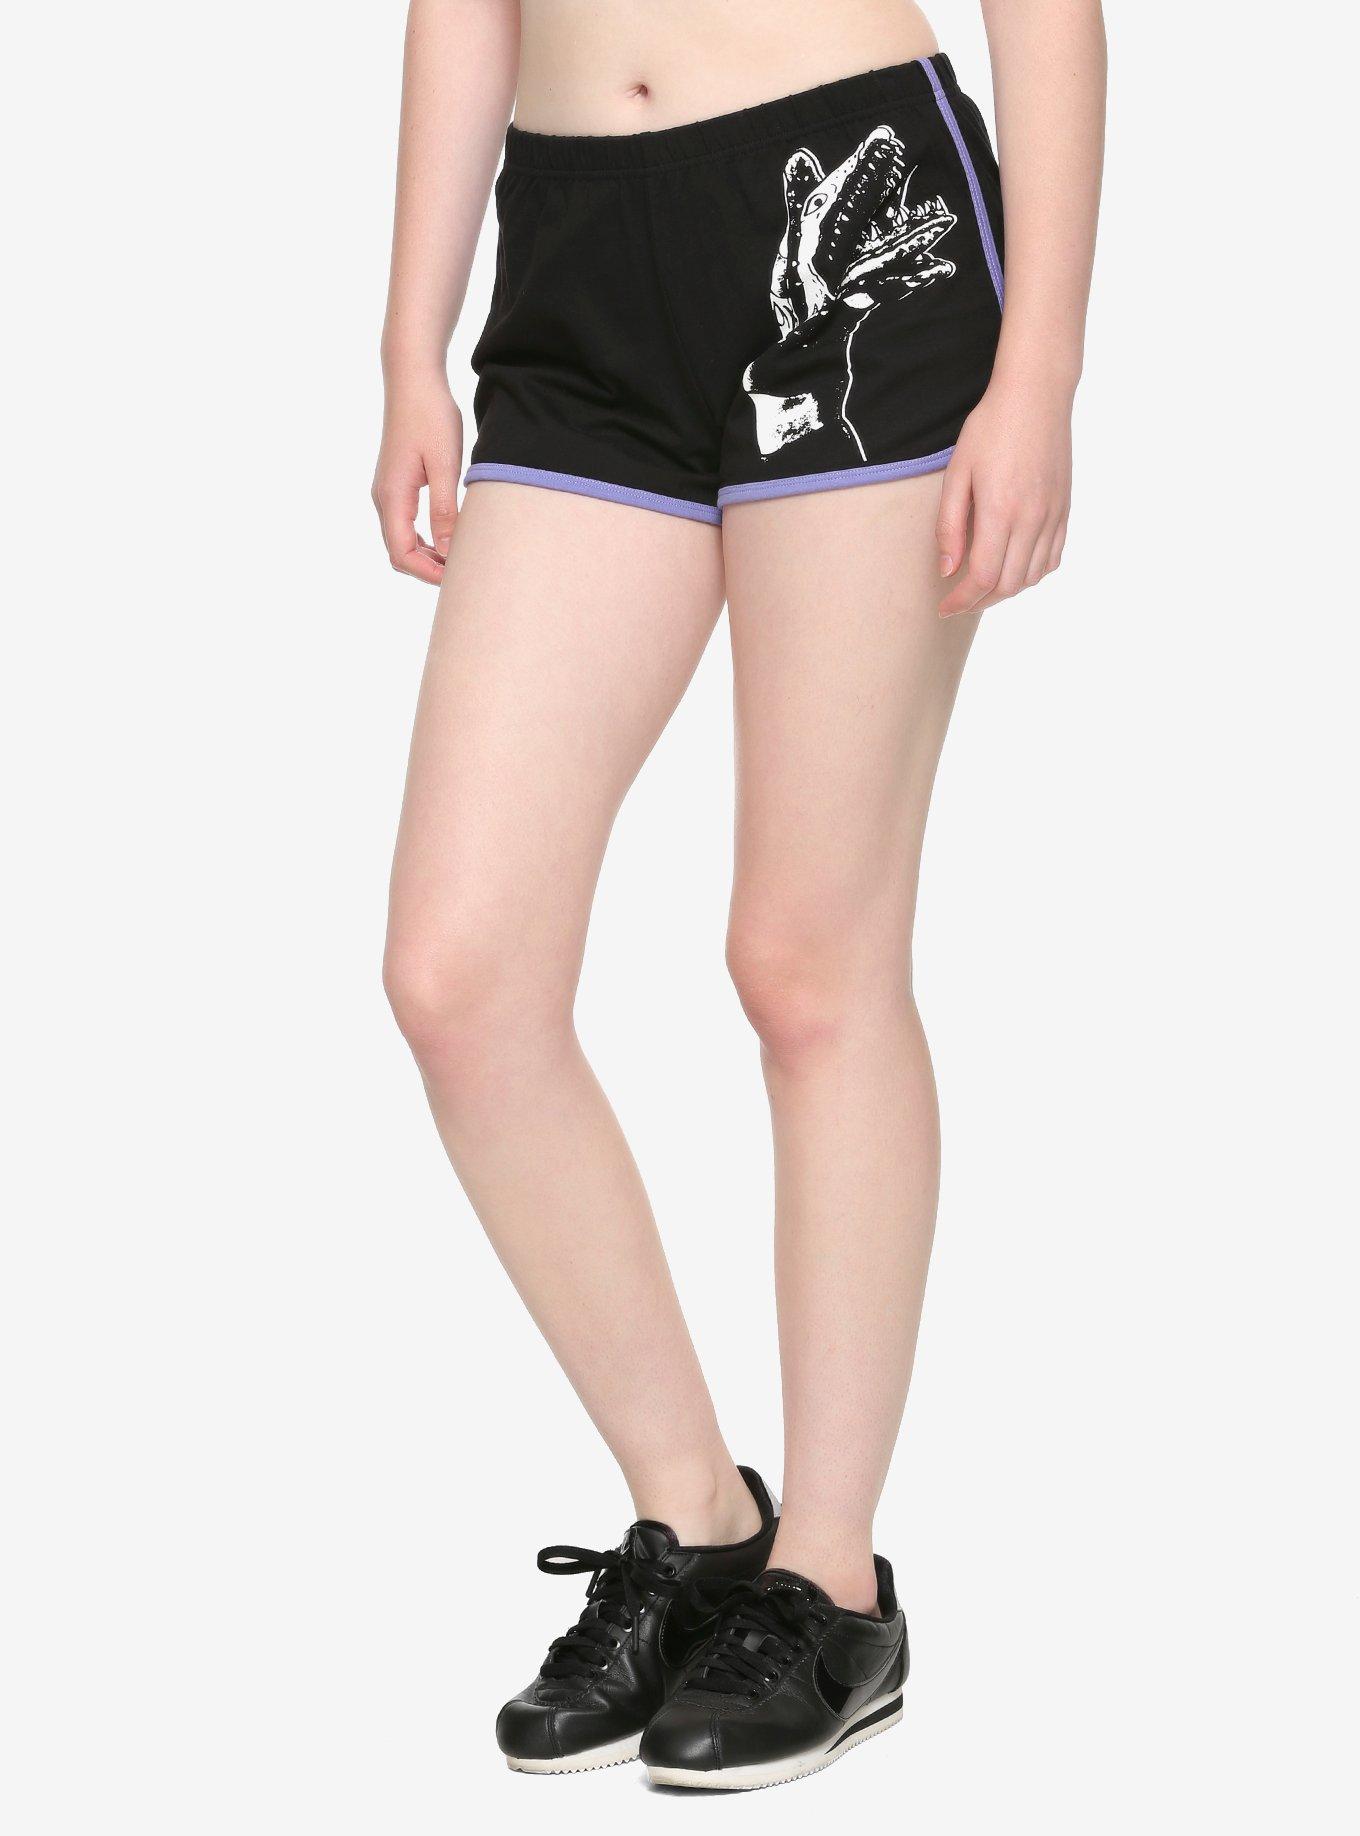 Beetlejuice Sandworm Girls Soft Shorts, BLACK, hi-res